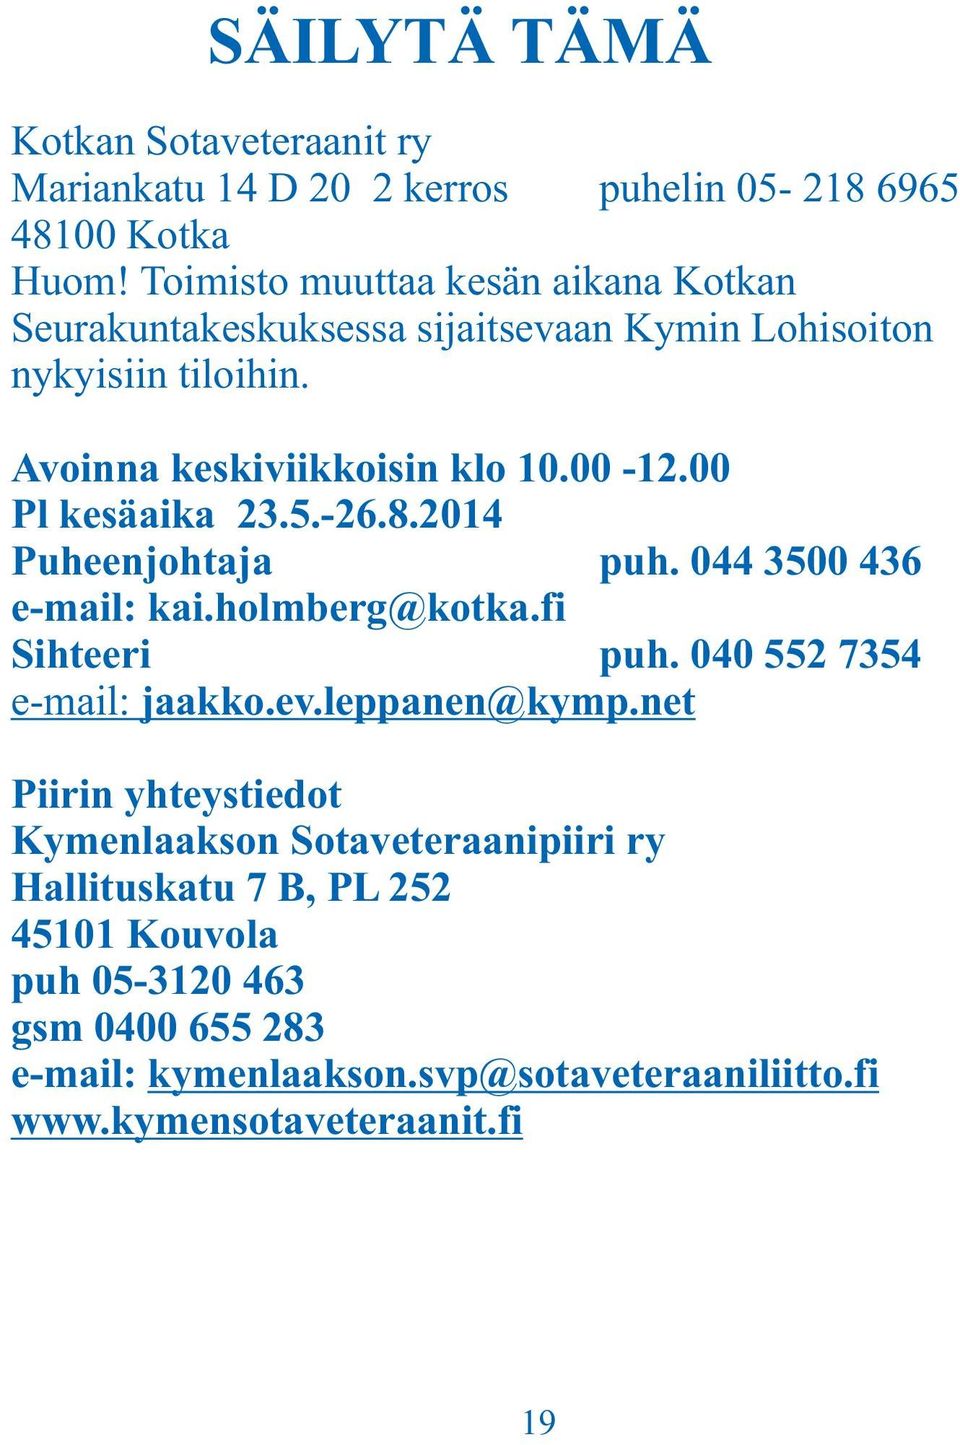 00 Pl kesäaika 23.5.-26.8.2014 Puheenjohtaja puh. 044 3500 436 e-mail: kai.holmberg@kotka.fi Sihteeri puh. 040 552 7354 e-mail: jaakko.ev.leppanen@kymp.